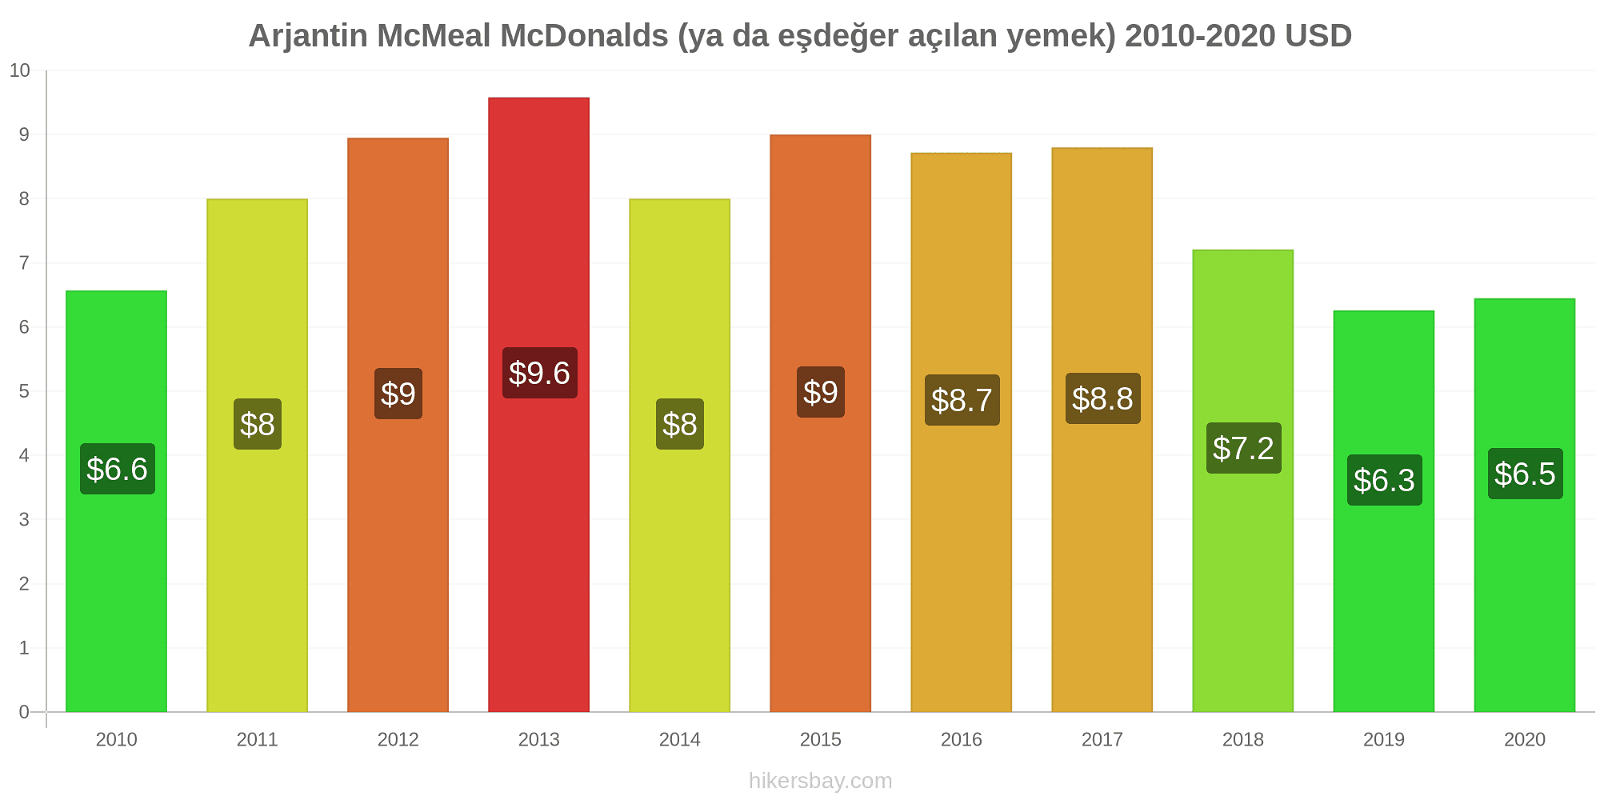 Arjantin fiyat değişiklikleri McMeal McDonalds (ya da eşdeğer açılan yemek) hikersbay.com